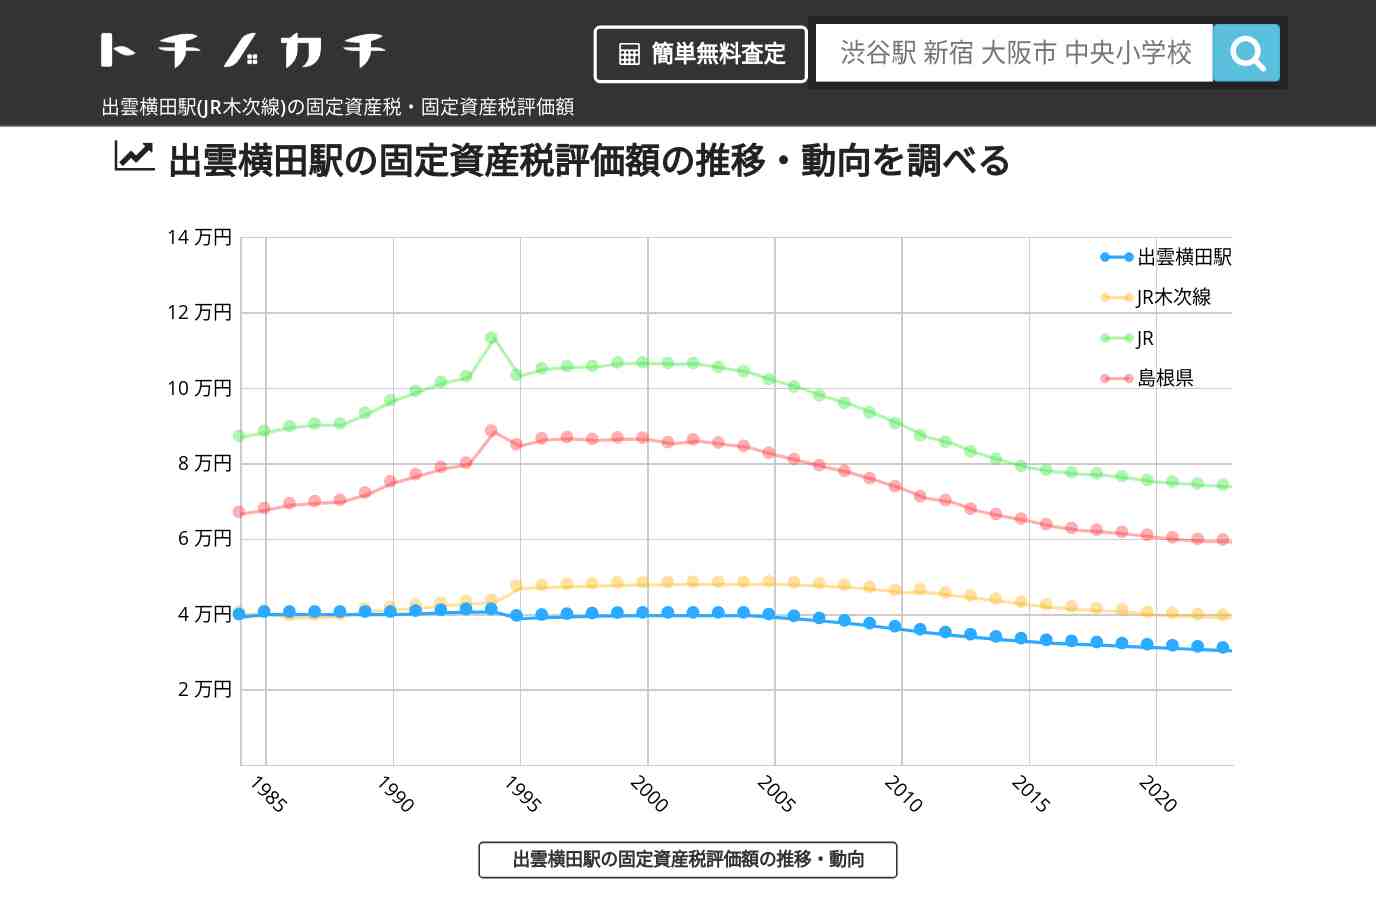 出雲横田駅(JR木次線)の固定資産税・固定資産税評価額 | トチノカチ